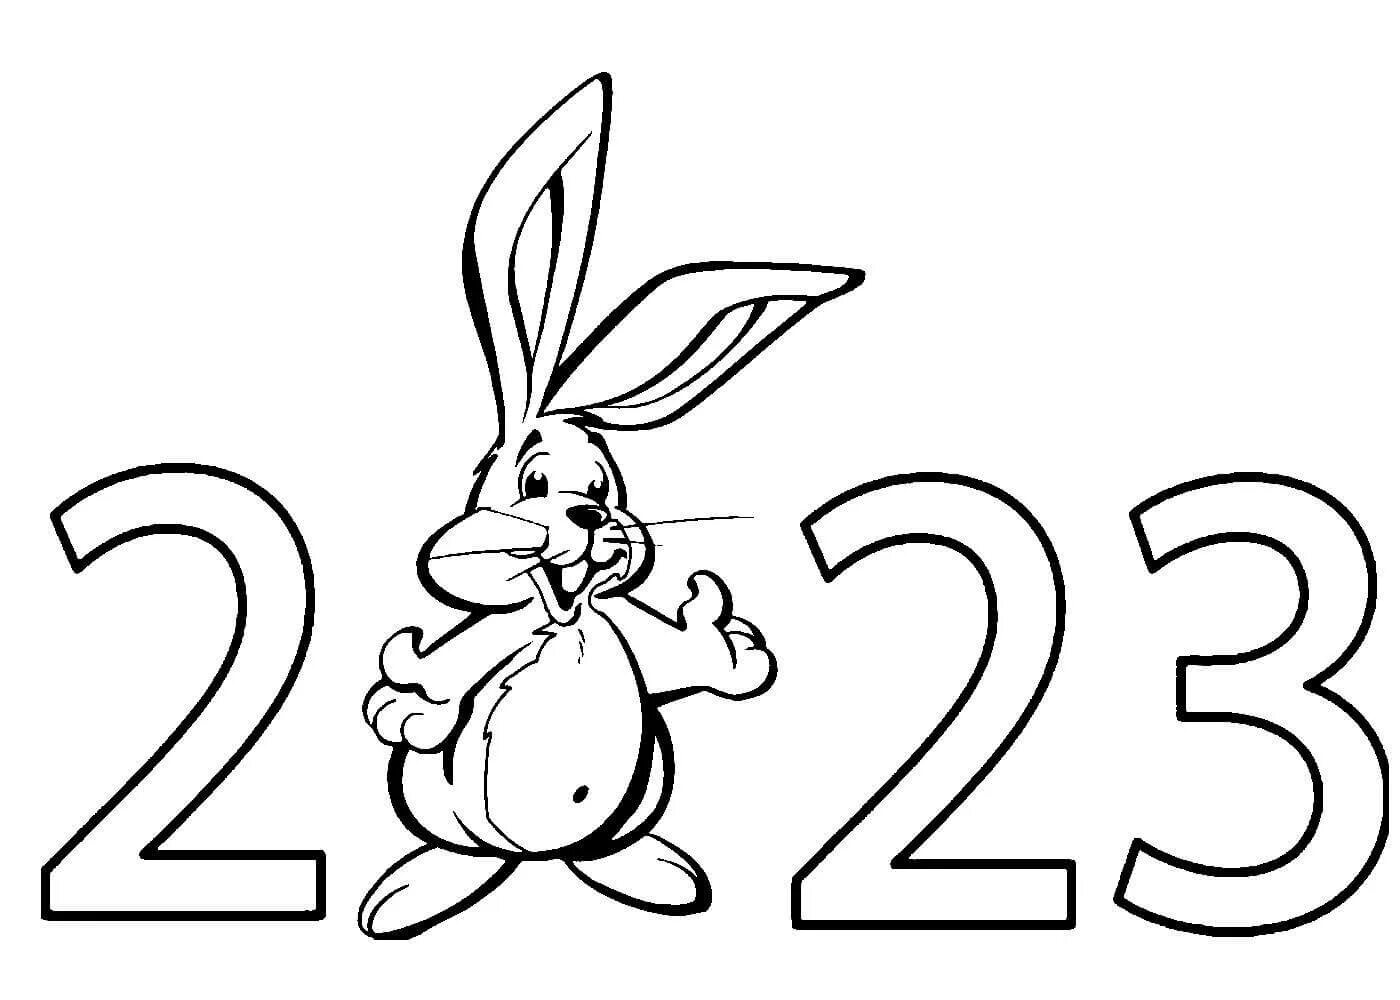 Раскраски 2023 распечатать. Раскраски. Раскраска новый год 2023 кролик. Раскраска на новый год 2023 года. Символ 2023 года для раскрашивания.